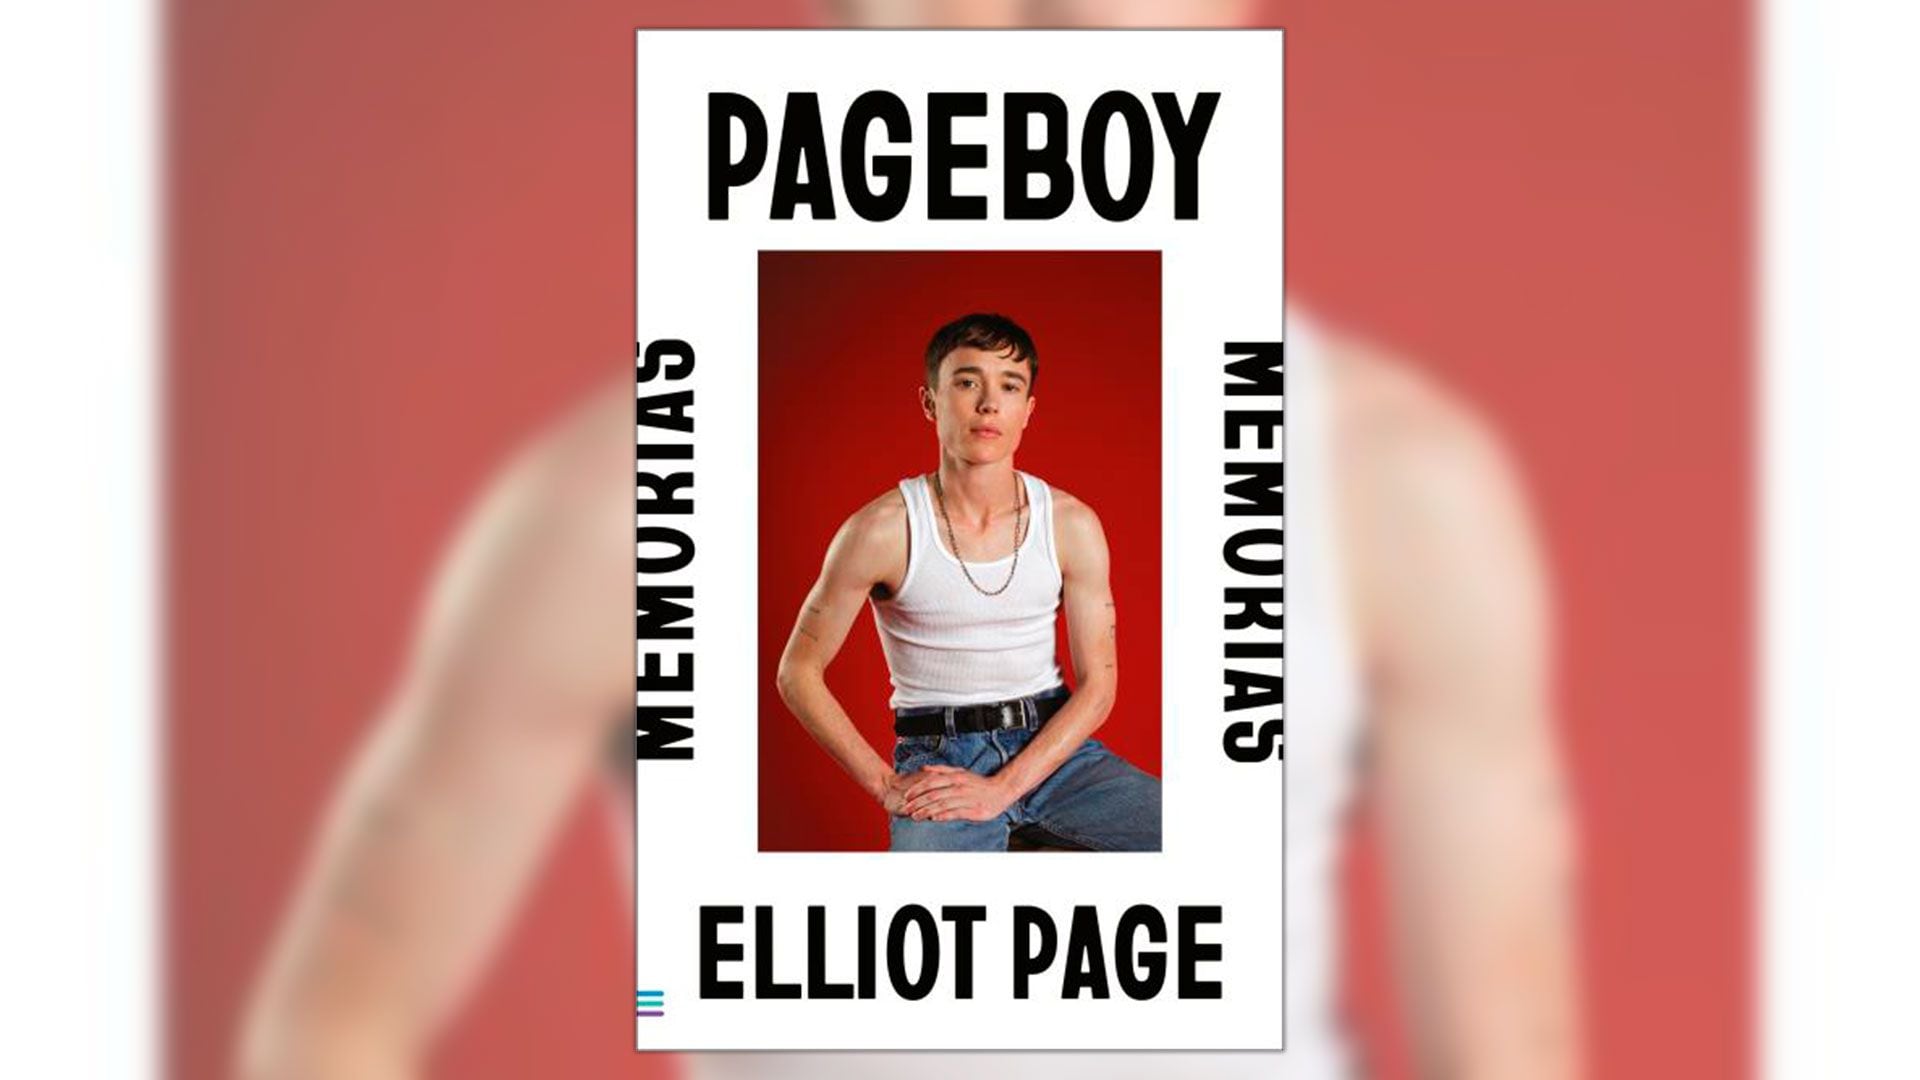 En "Pageboy", Elliot Page describe su experiencia como actor trans en Hollywood. (Crédito: Catherine Opie)